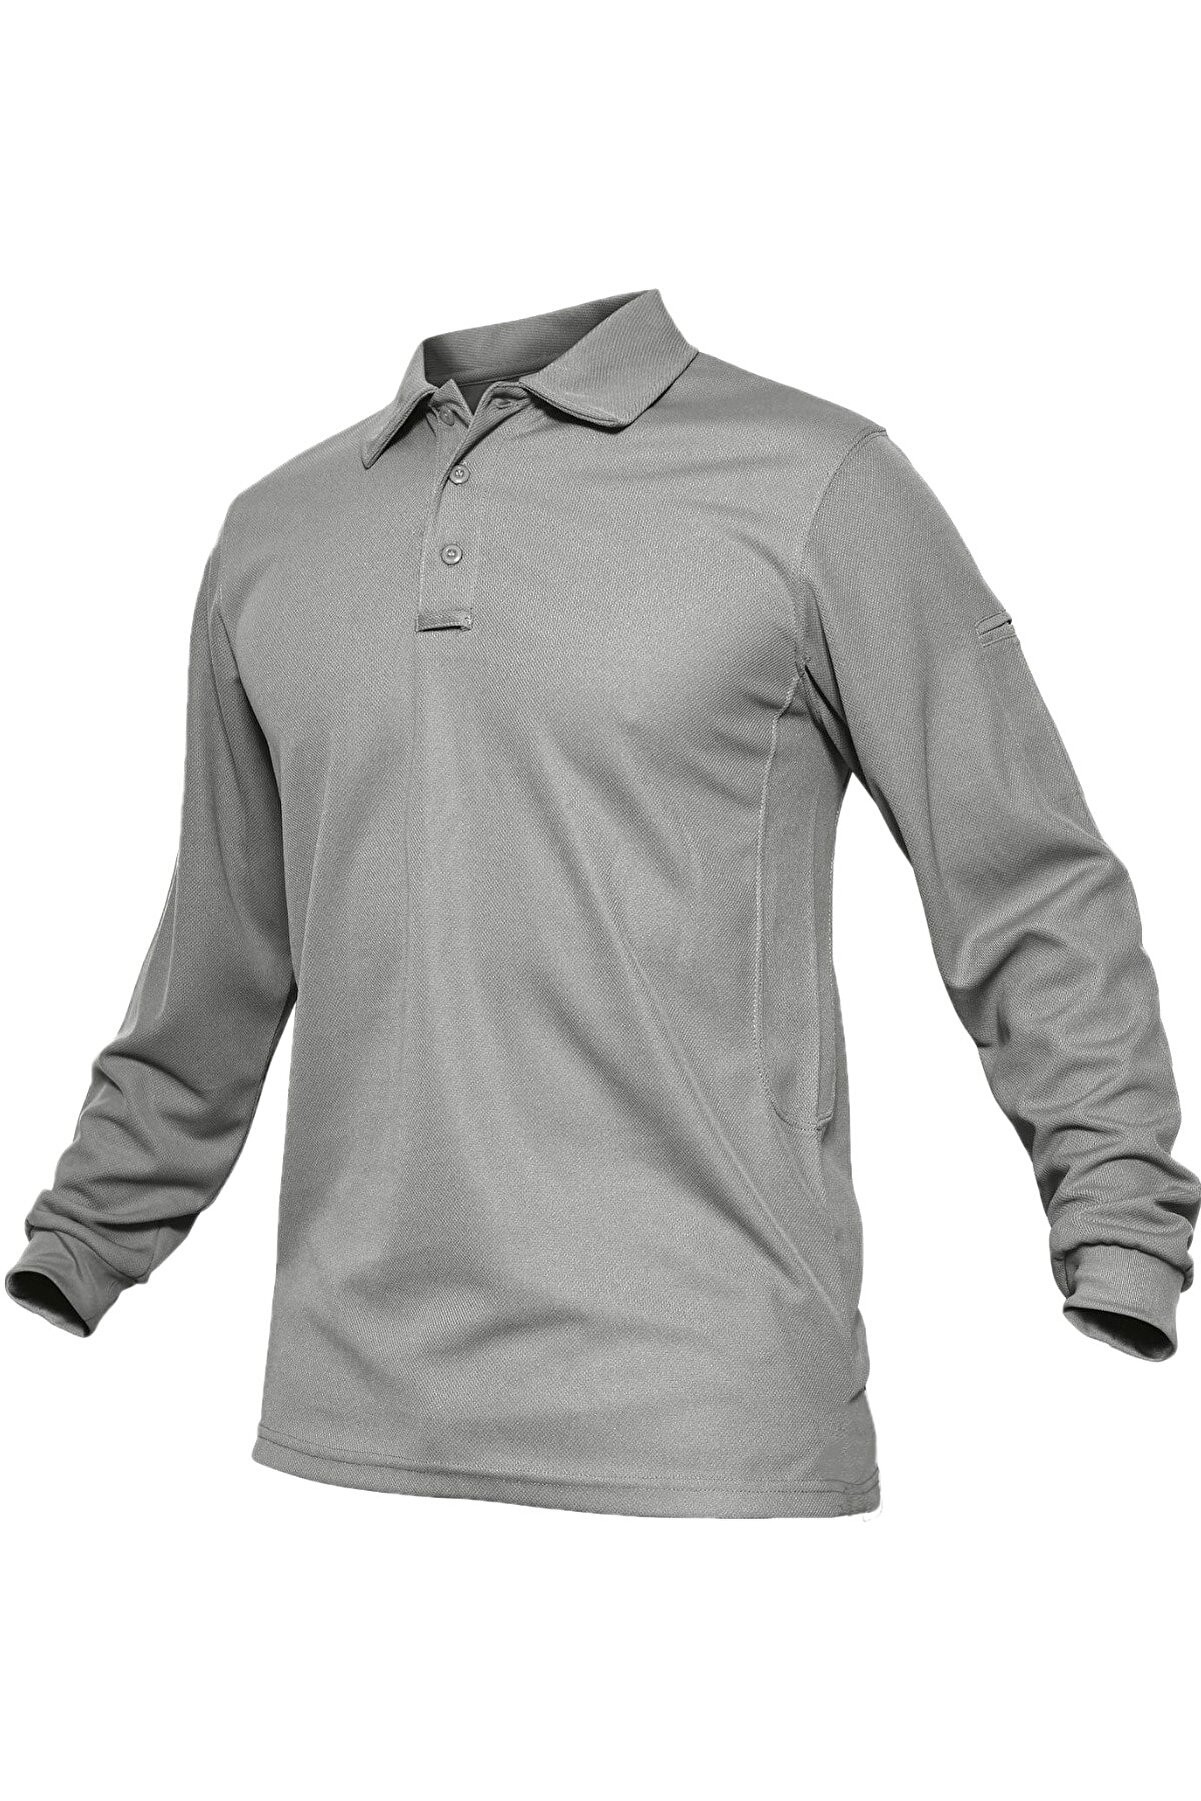 Ghassy Co. Erkek Jersey Golf Polo Gömlek Pike Performans Taktik Askeri Uzun Kollu T-Shirt - Açık Gri